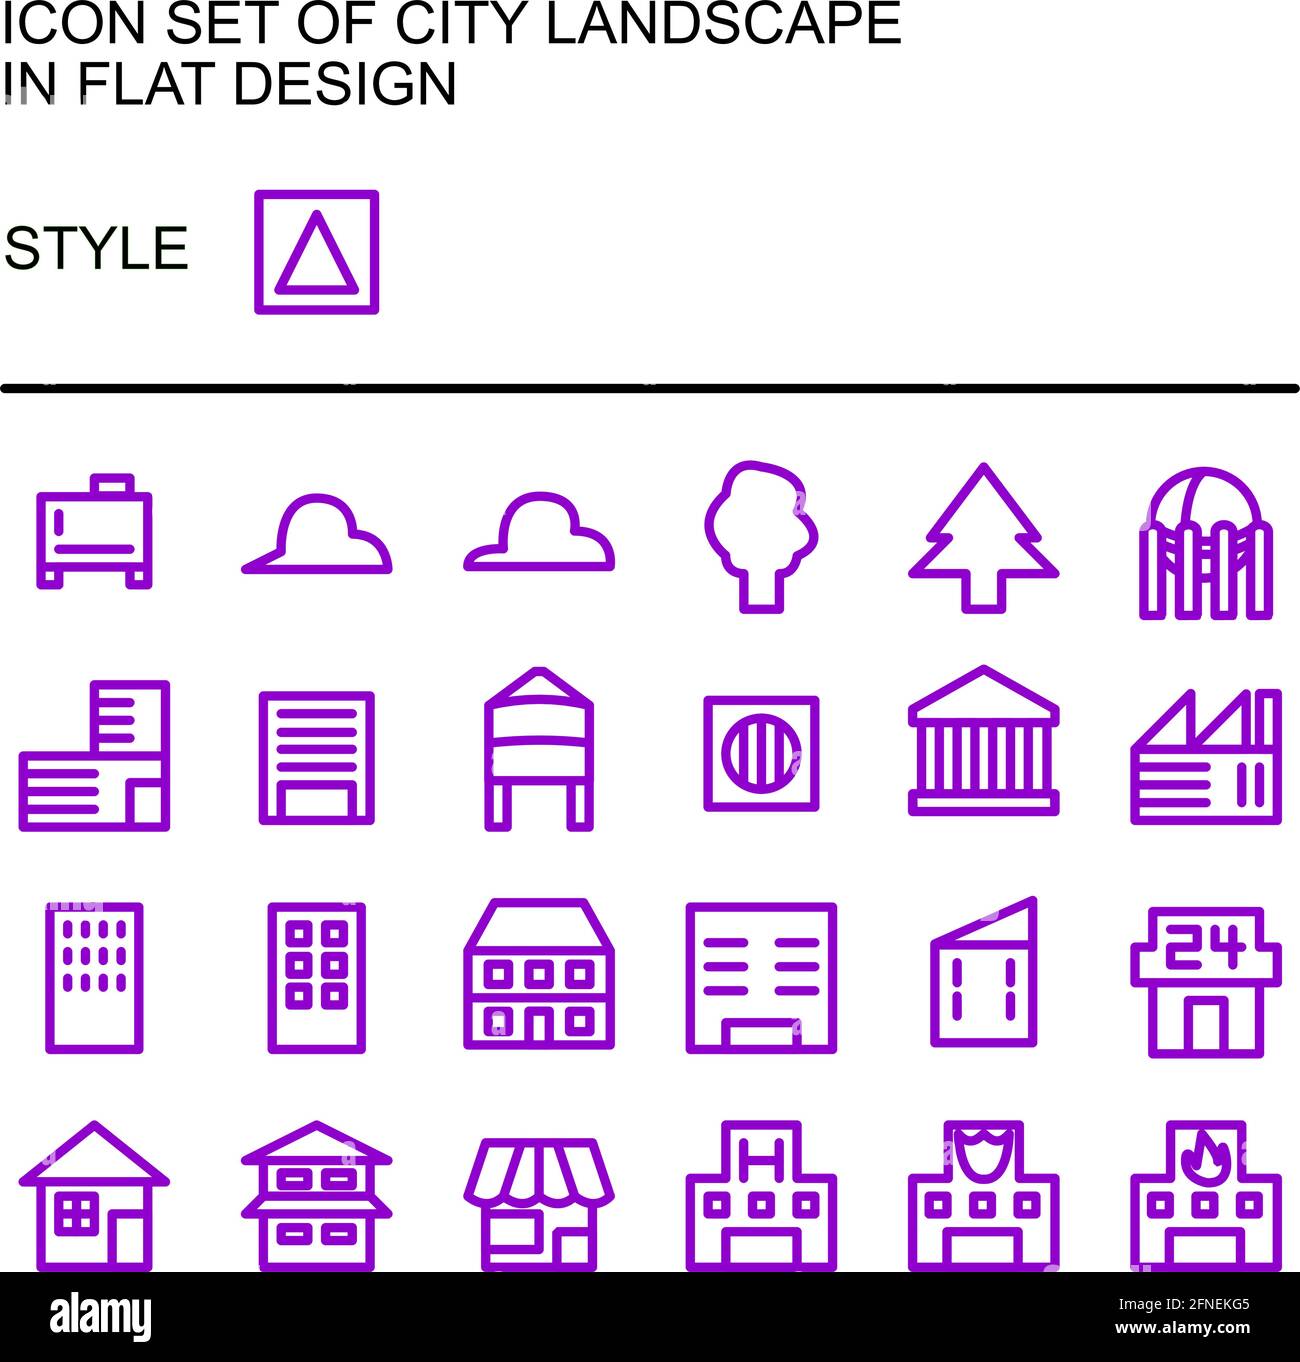 Icône de paysage urbain, conception plate avec lignes violettes, remplissage blanc. Illustration de Vecteur